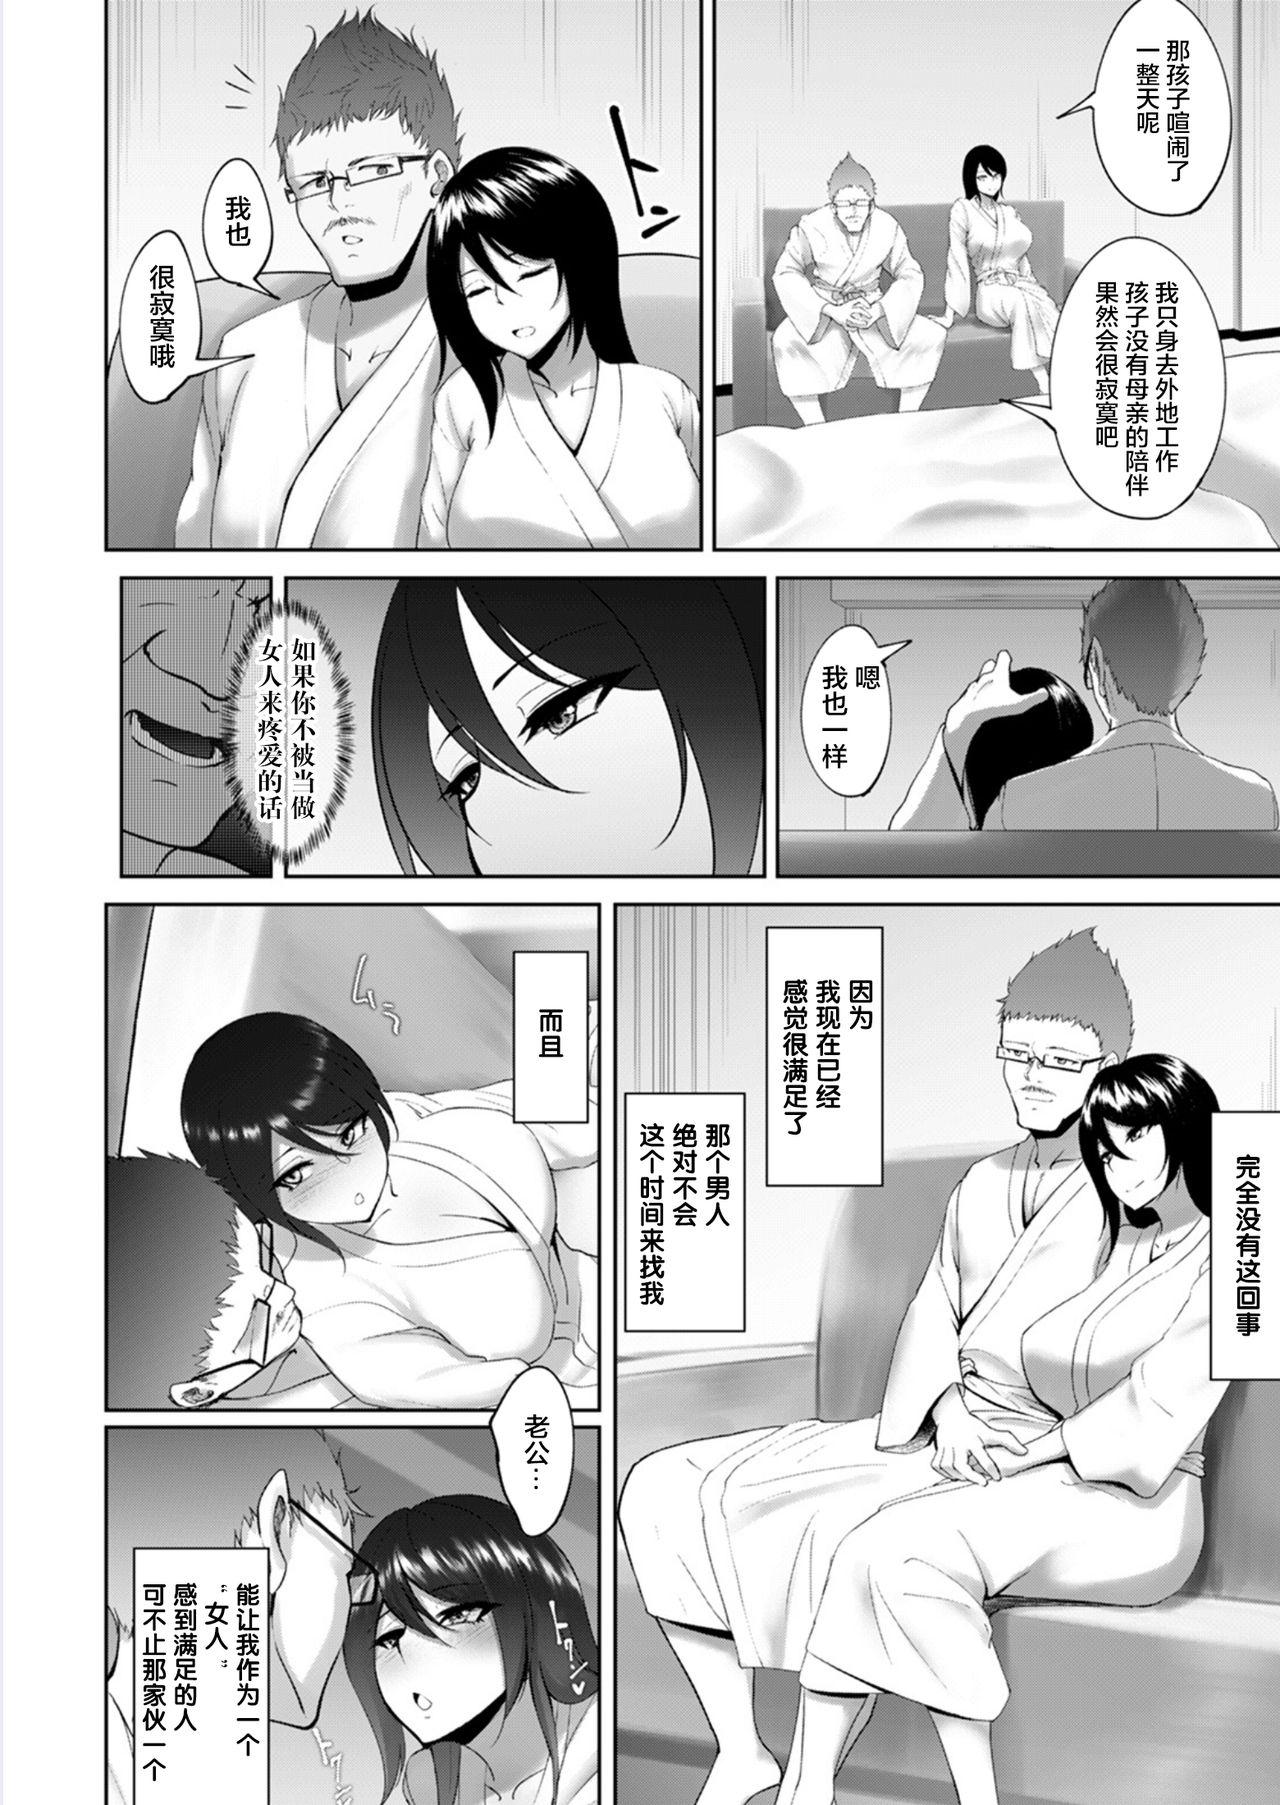 Stockings Joushi to Nenai Career Woman nado Inai 2 1080p - Page 8